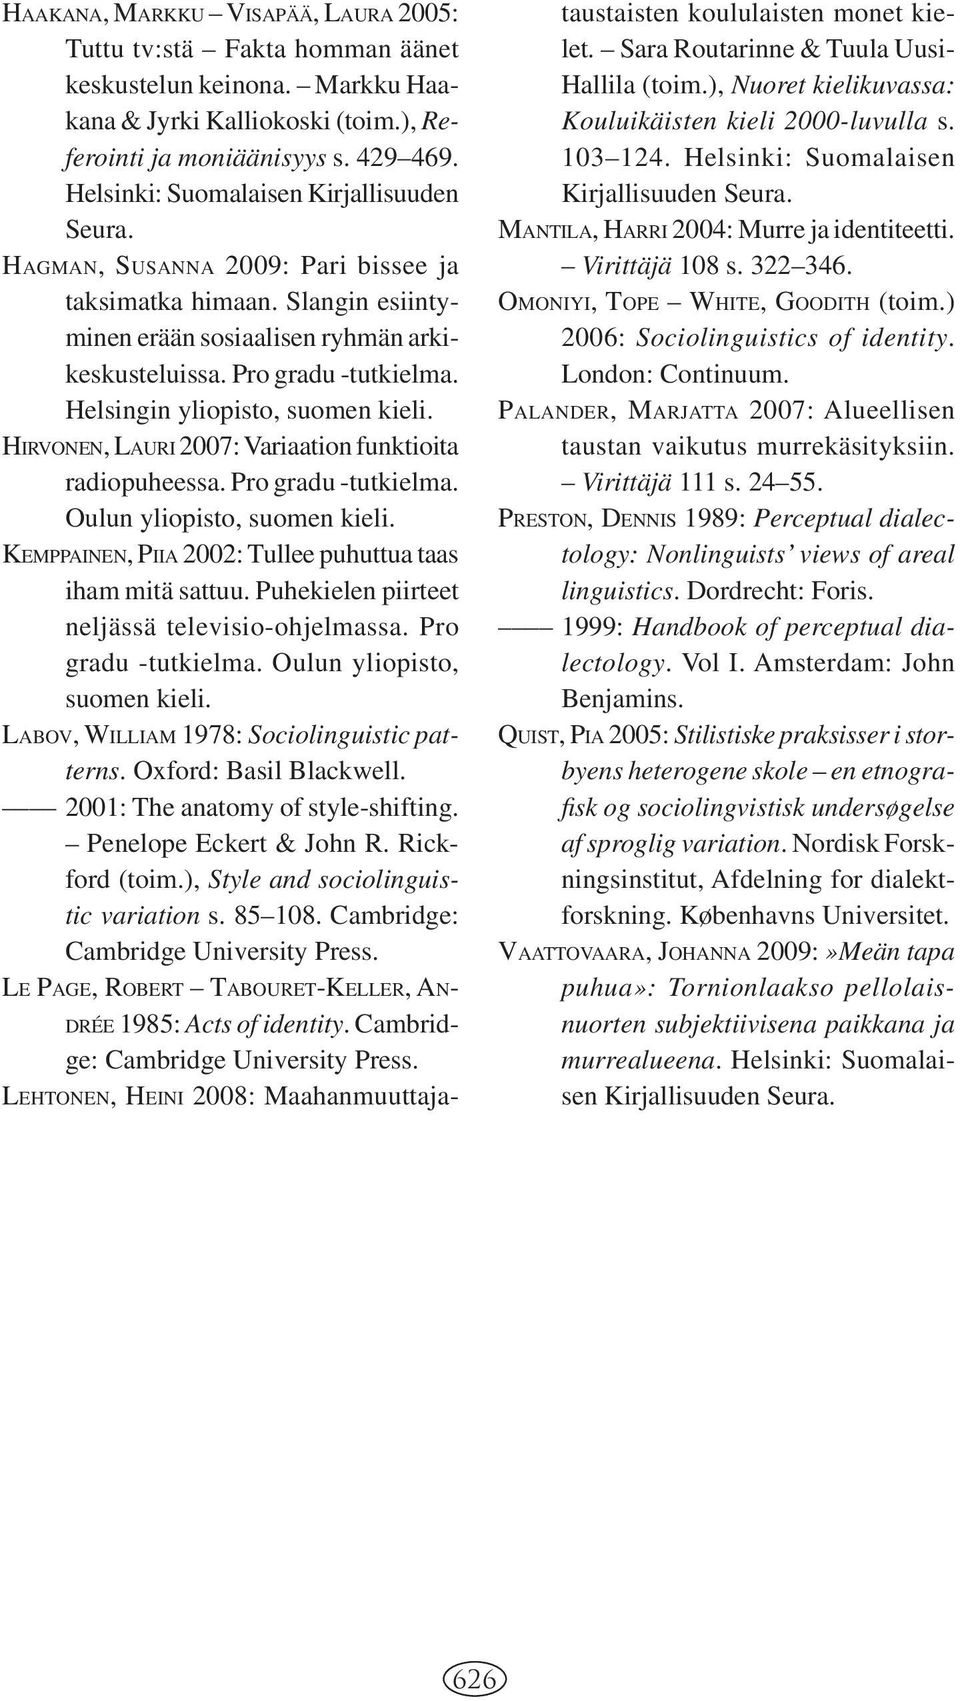 Helsingin yliopisto, suomen kieli. HIRVONEN, LAURI 2007: Variaation funktioita radiopuheessa. Pro gradu -tutkielma. Oulun yliopisto, suomen kieli.